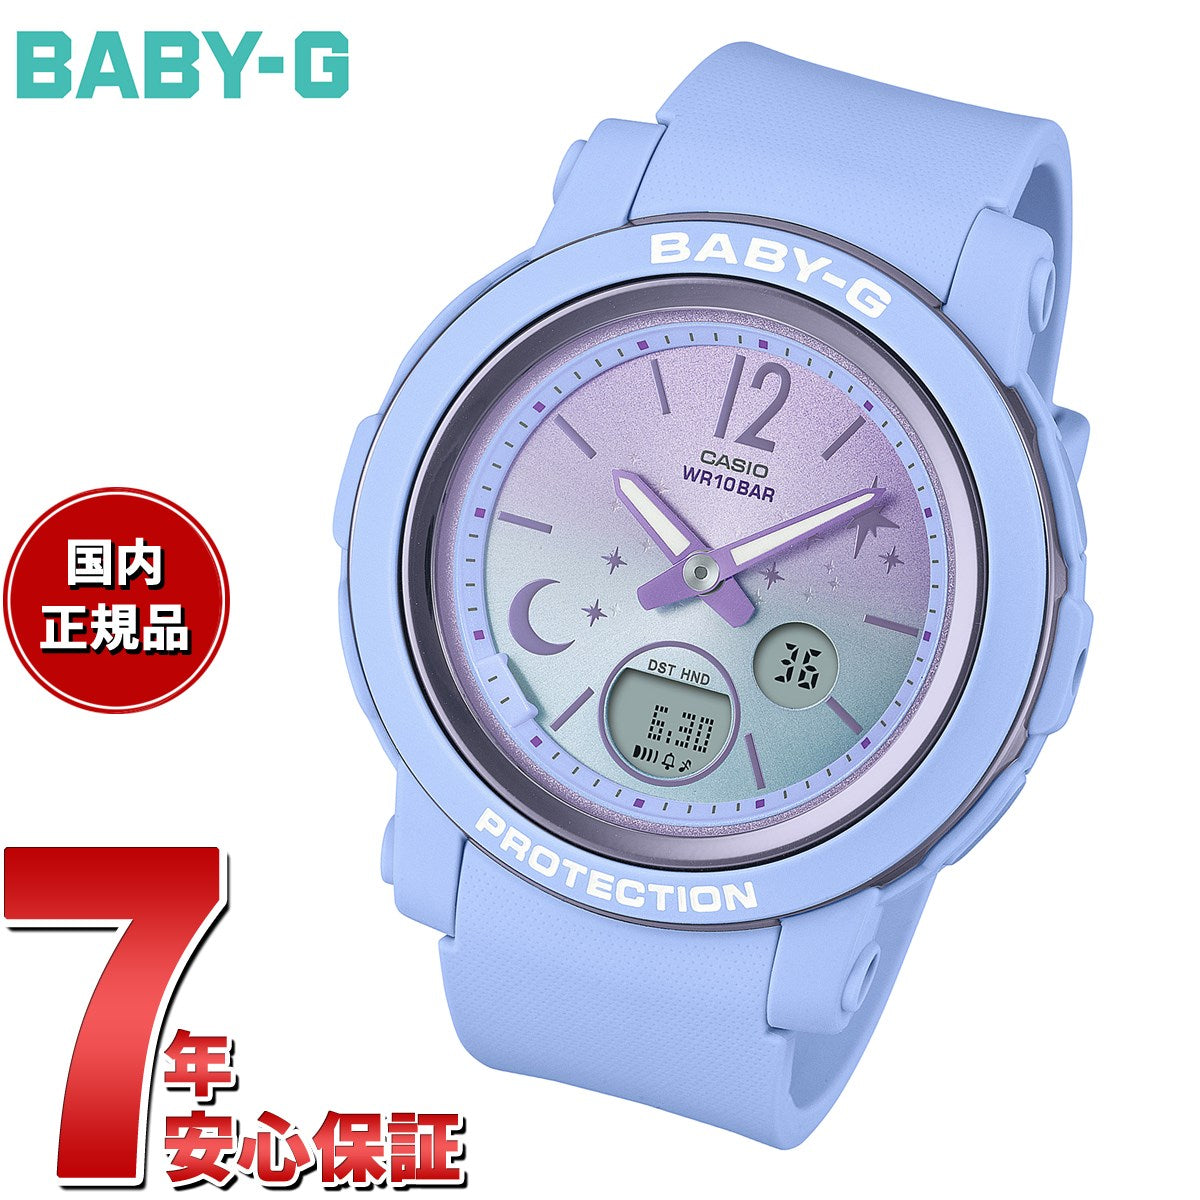 BABY-G カシオ ベビーG レディース 腕時計 BGA-290DS-2AJF パステル